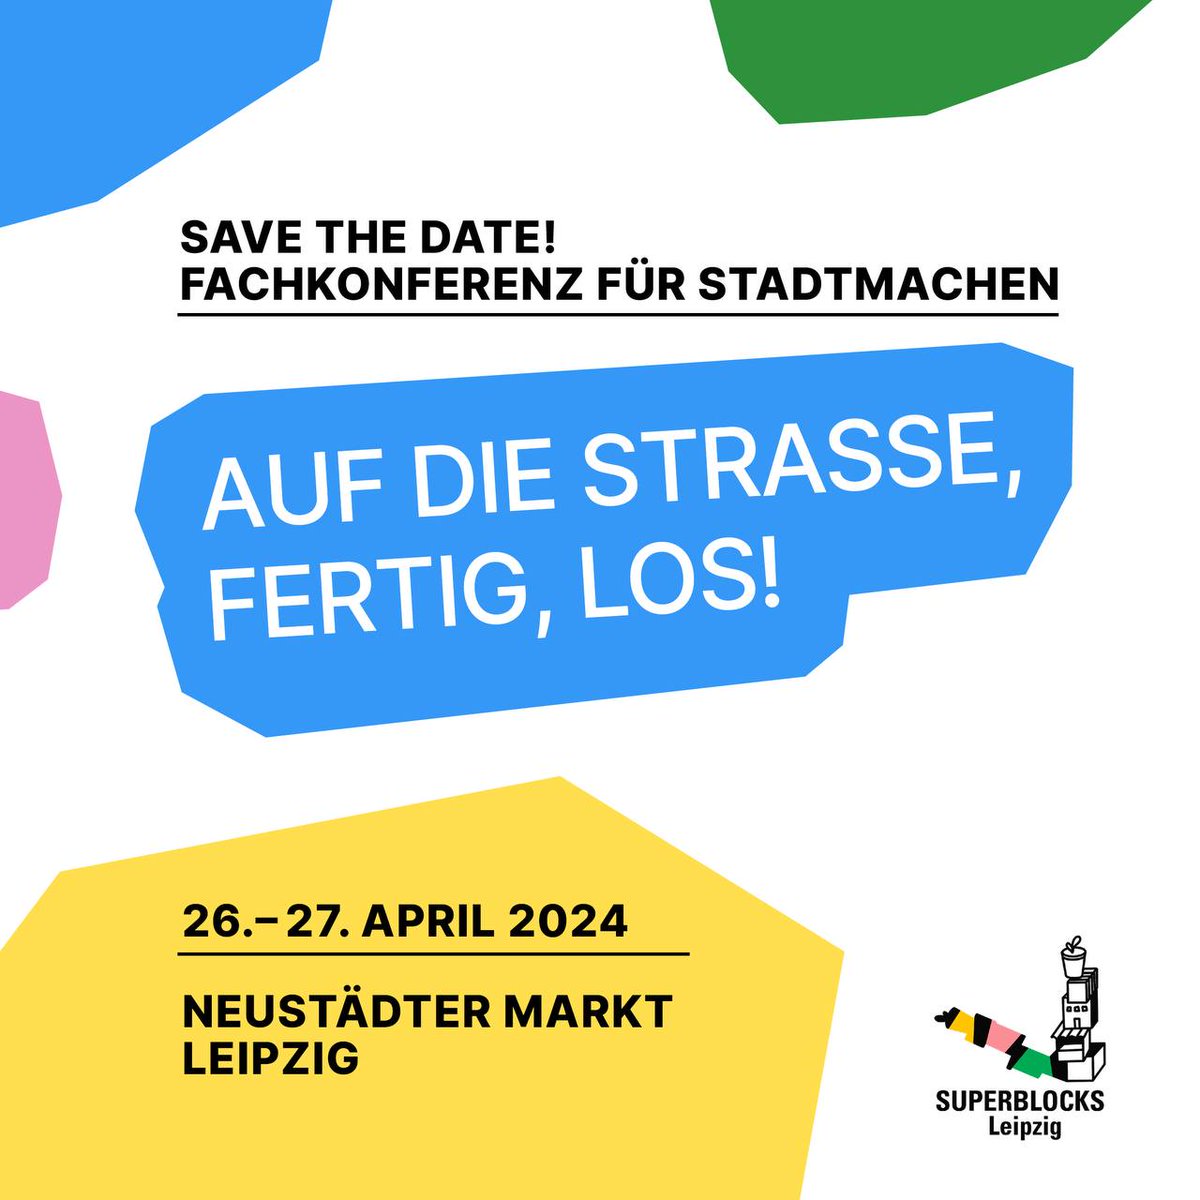 Am 26. und 27. April 2024 findet in Leipzig die Fachkonferenz zum Abschluss des Pilotprojekts “Neue Nähen – Superblocks Leipzig” statt. Programm und Link zur Anmeldung: superblocks-leipzig.de/konferenz-26-2… #superblocks #leipzig #konferenz #leipzigost